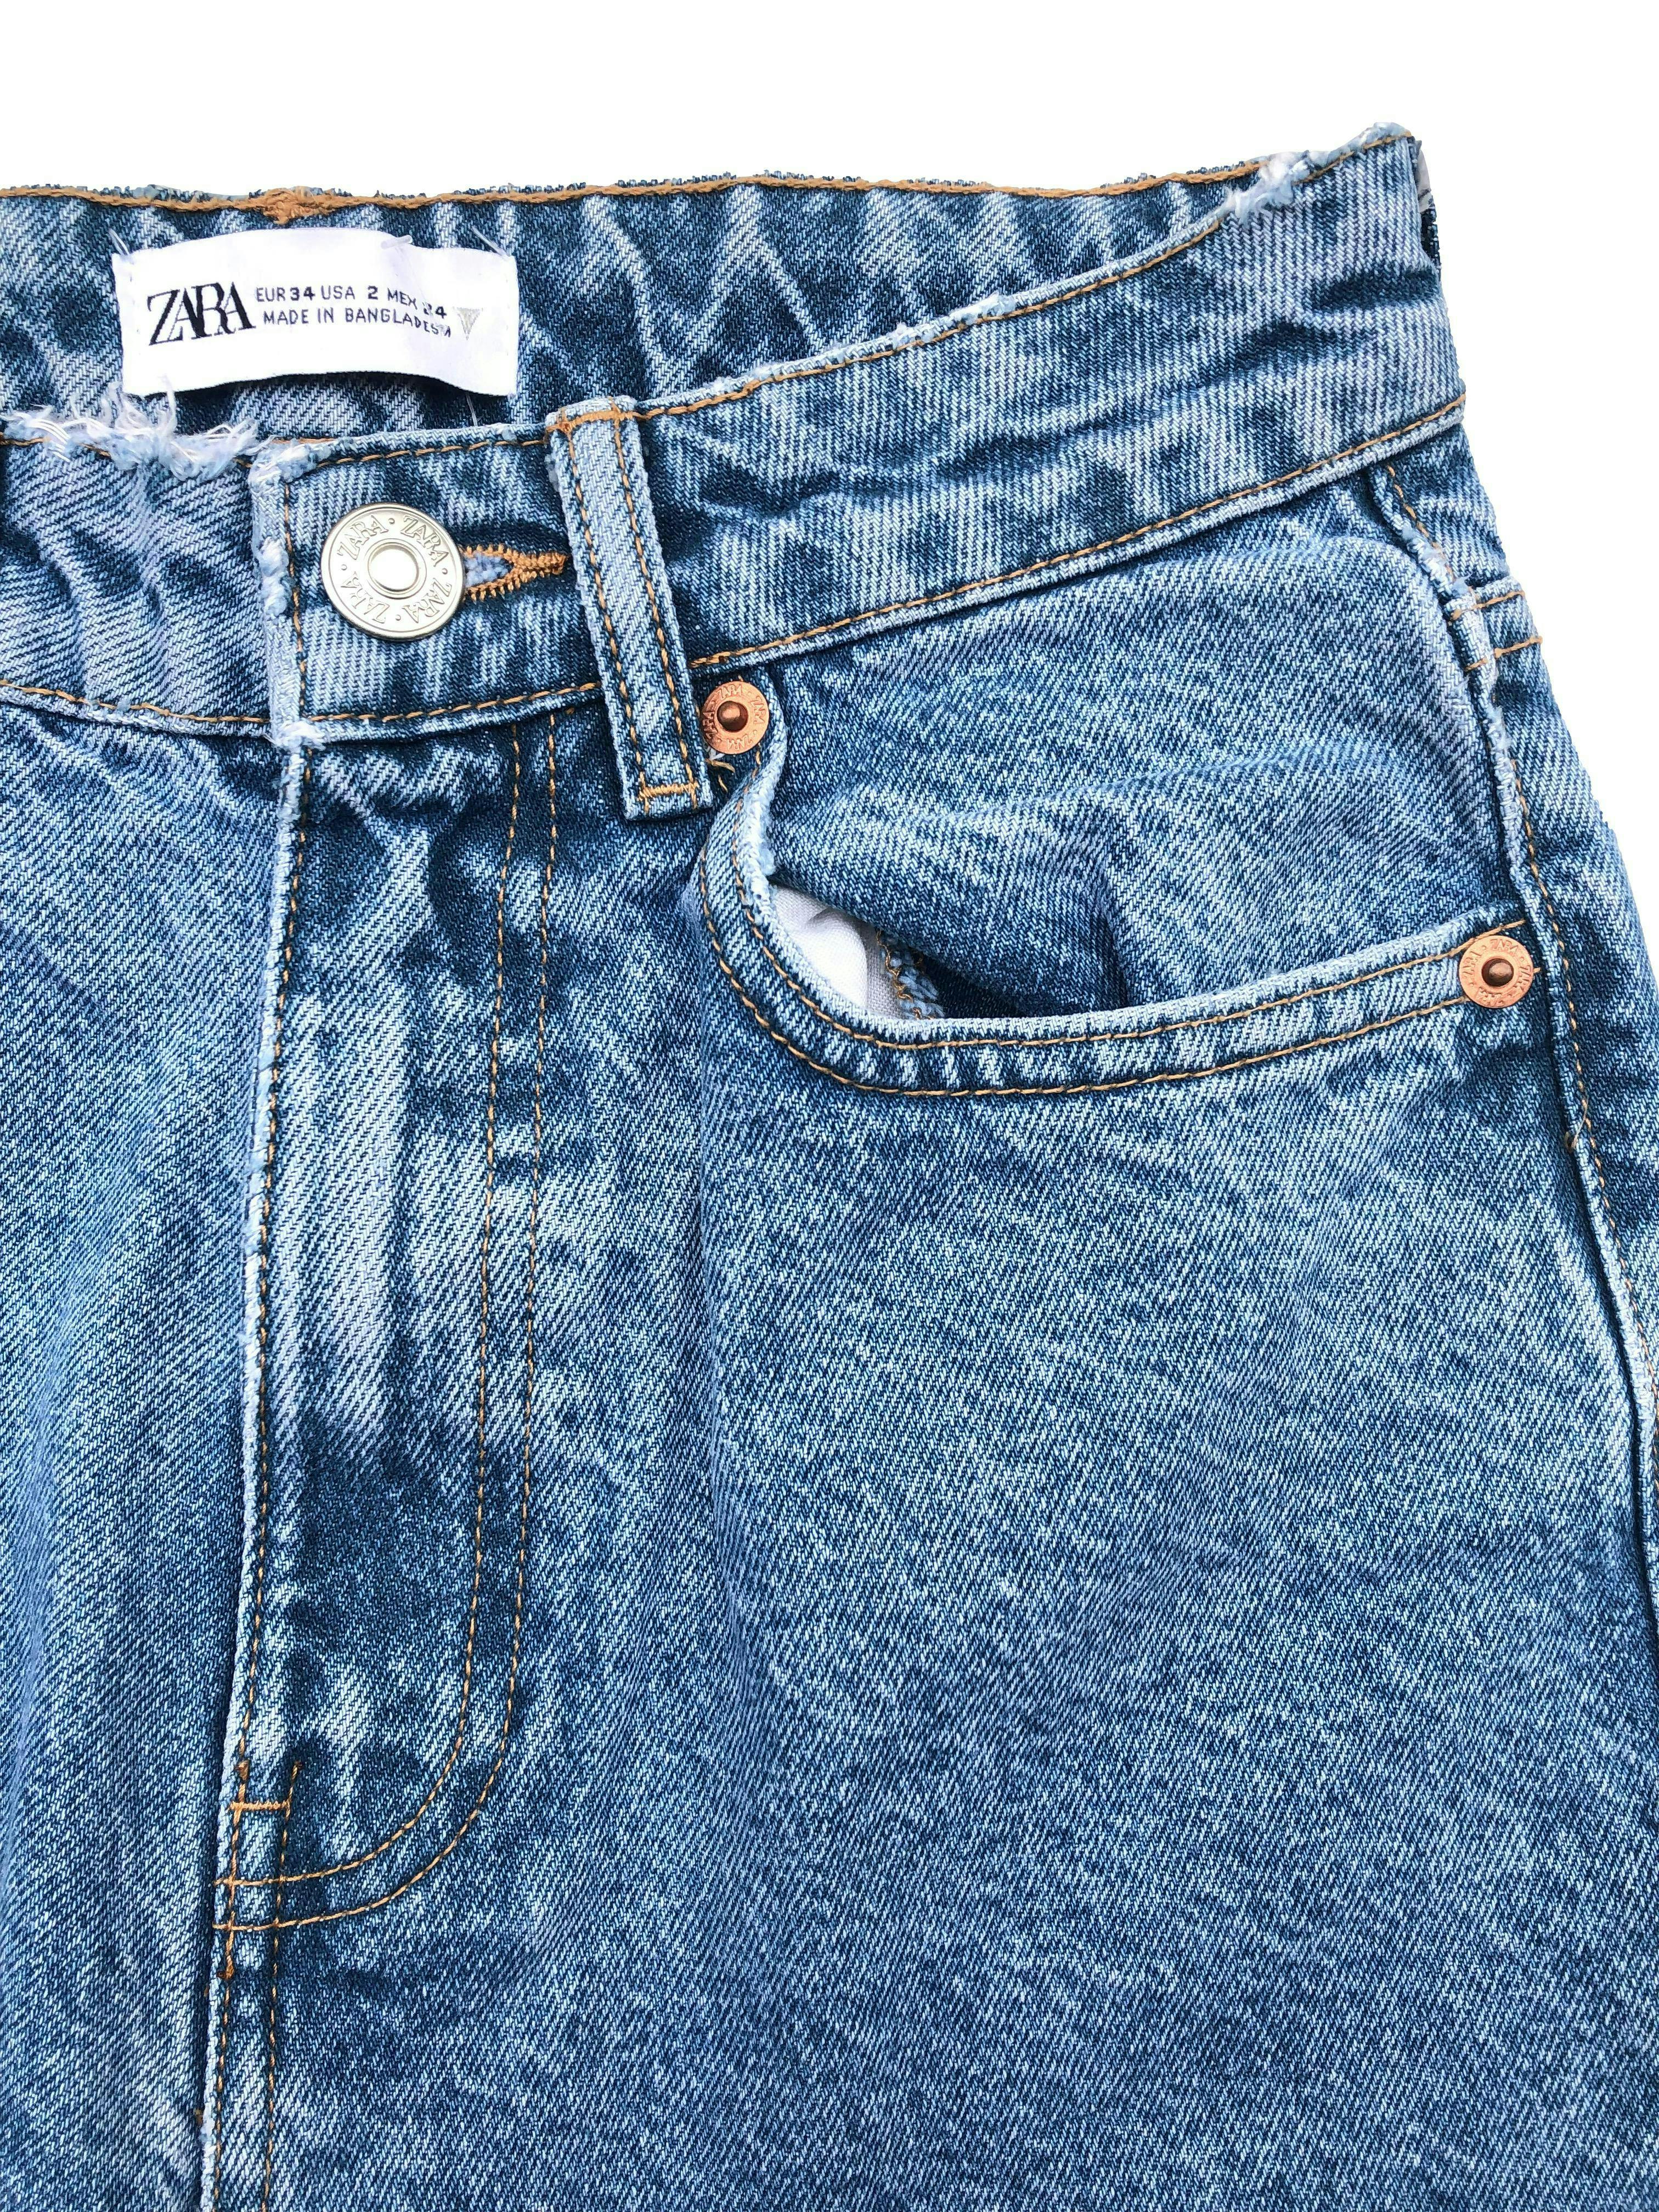 Bermuda Zara de jean rígido, five pockets, detalles rasgados y basta cropped. Cintura 62cm Tiro 30cm Largo 44cm